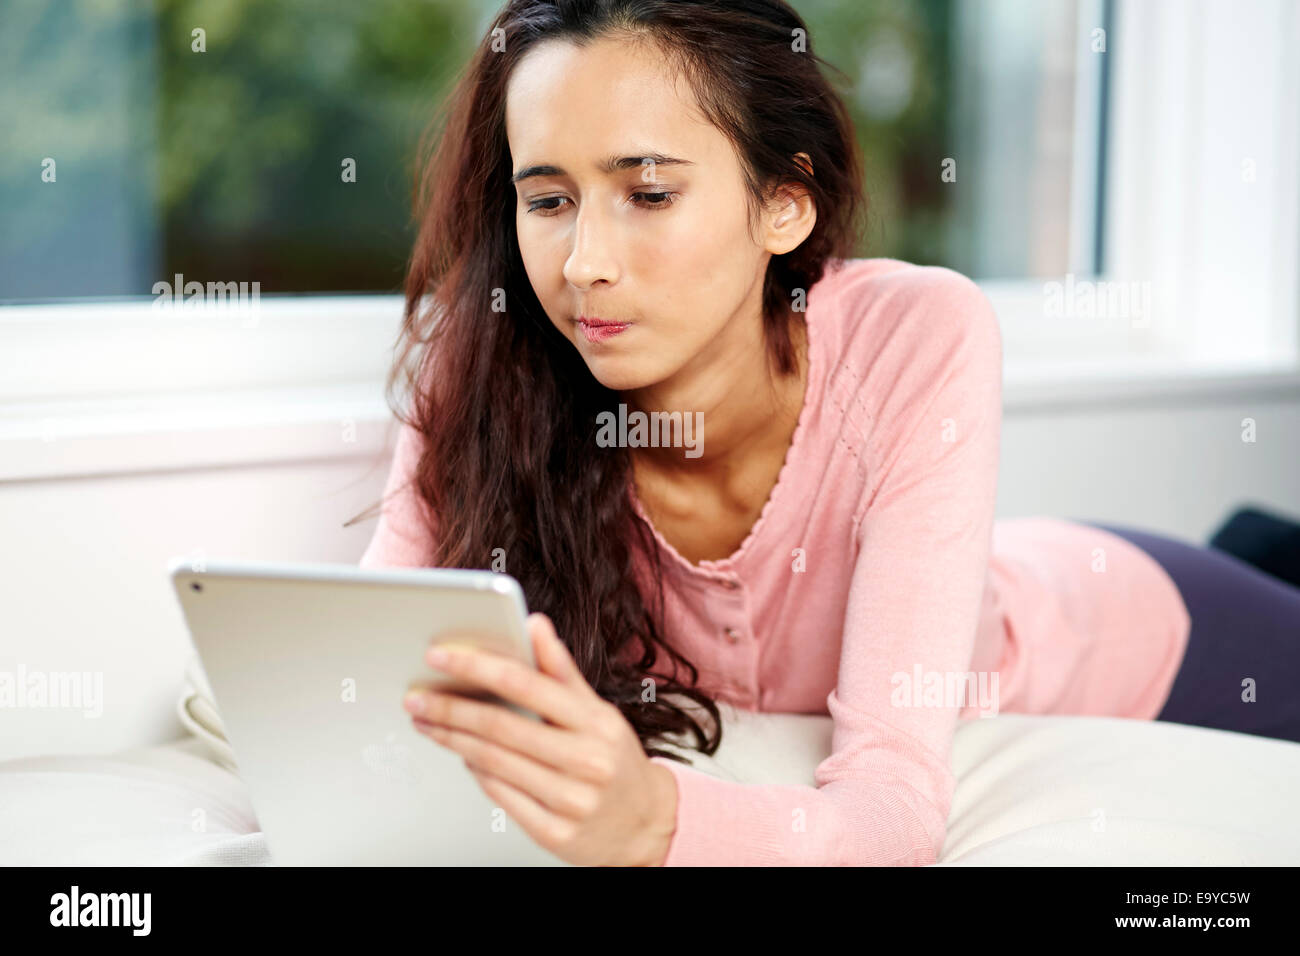 Chica navegar por sitios web utilizando iPad Foto de stock